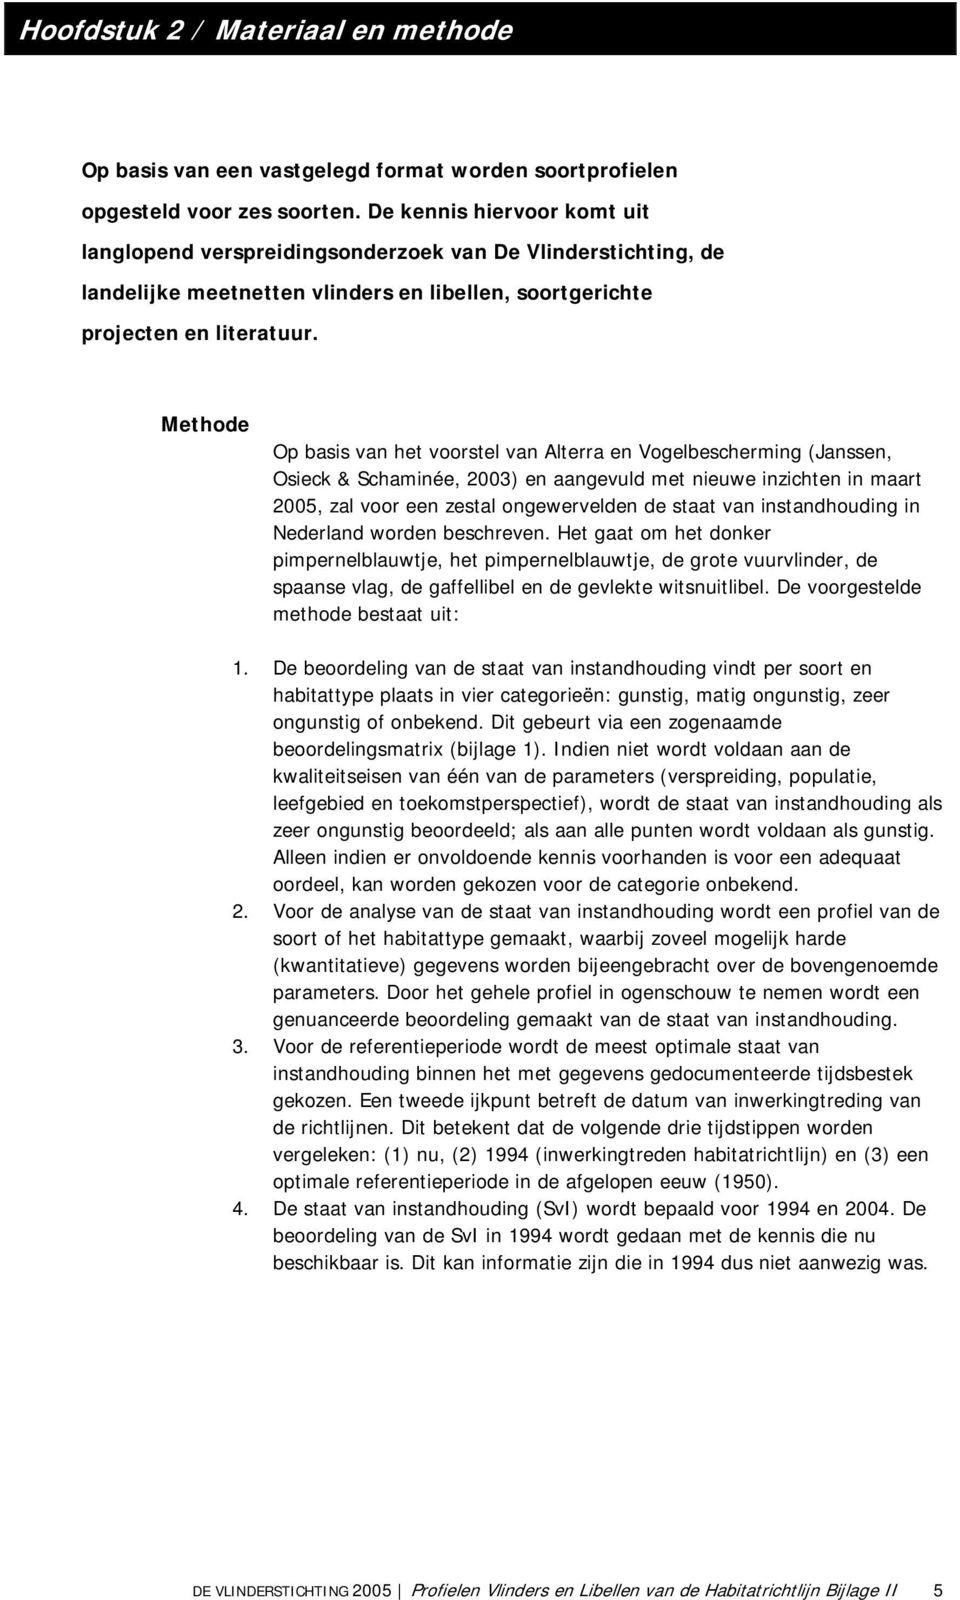 Methode Op basis van het voorstel van Alterra en Vogelbescherming (Janssen, Osieck & Schaminée, 2003) en aangevuld met nieuwe inzichten in maart 2005, zal voor een zestal ongewervelden de staat van